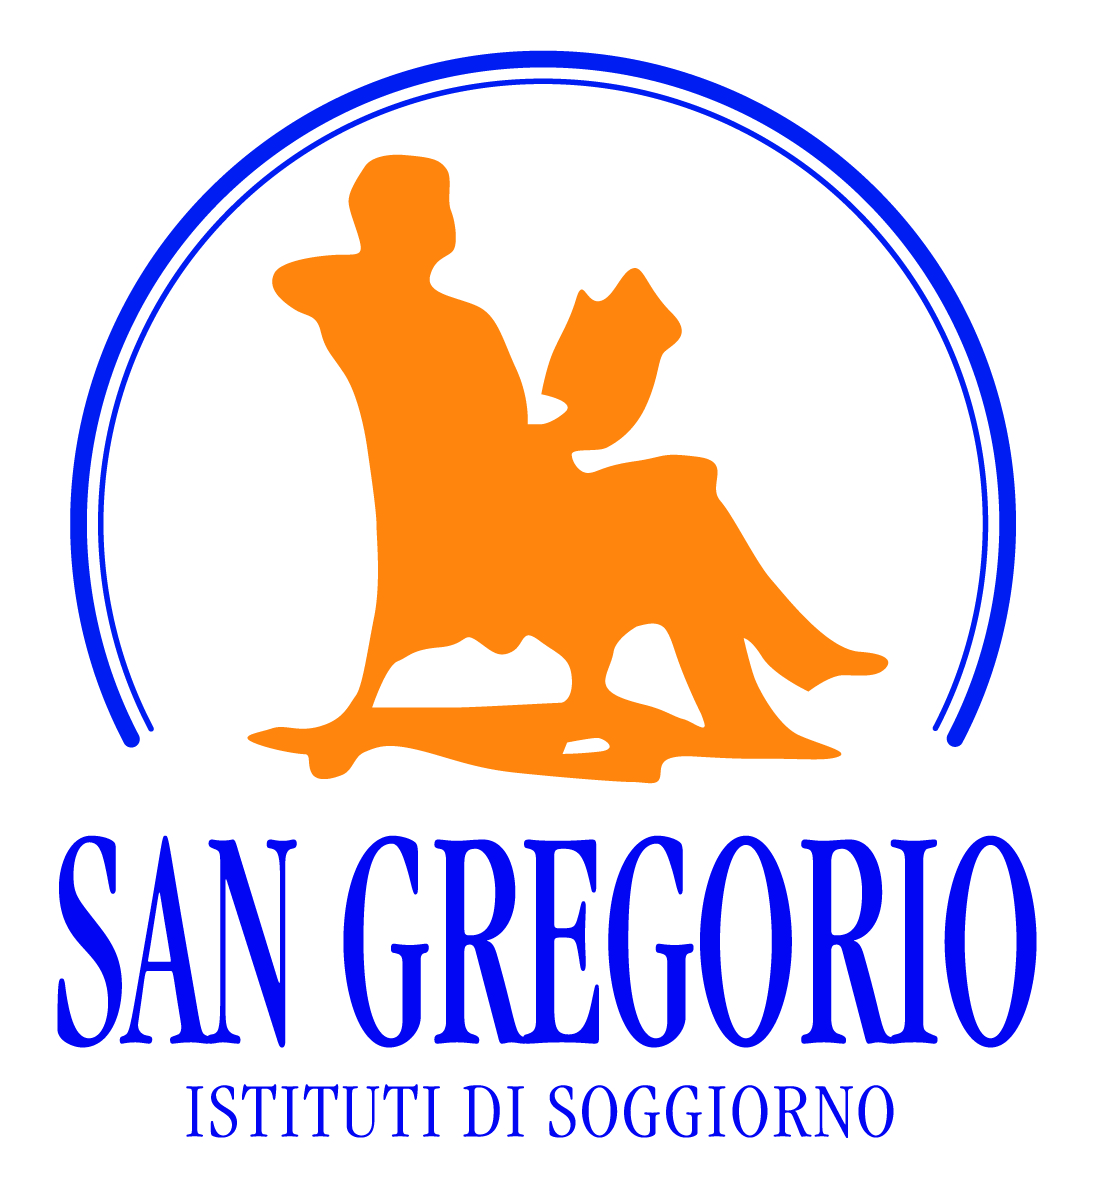 Istituti di Soggiorno per Anziani "San Gregorio" logo